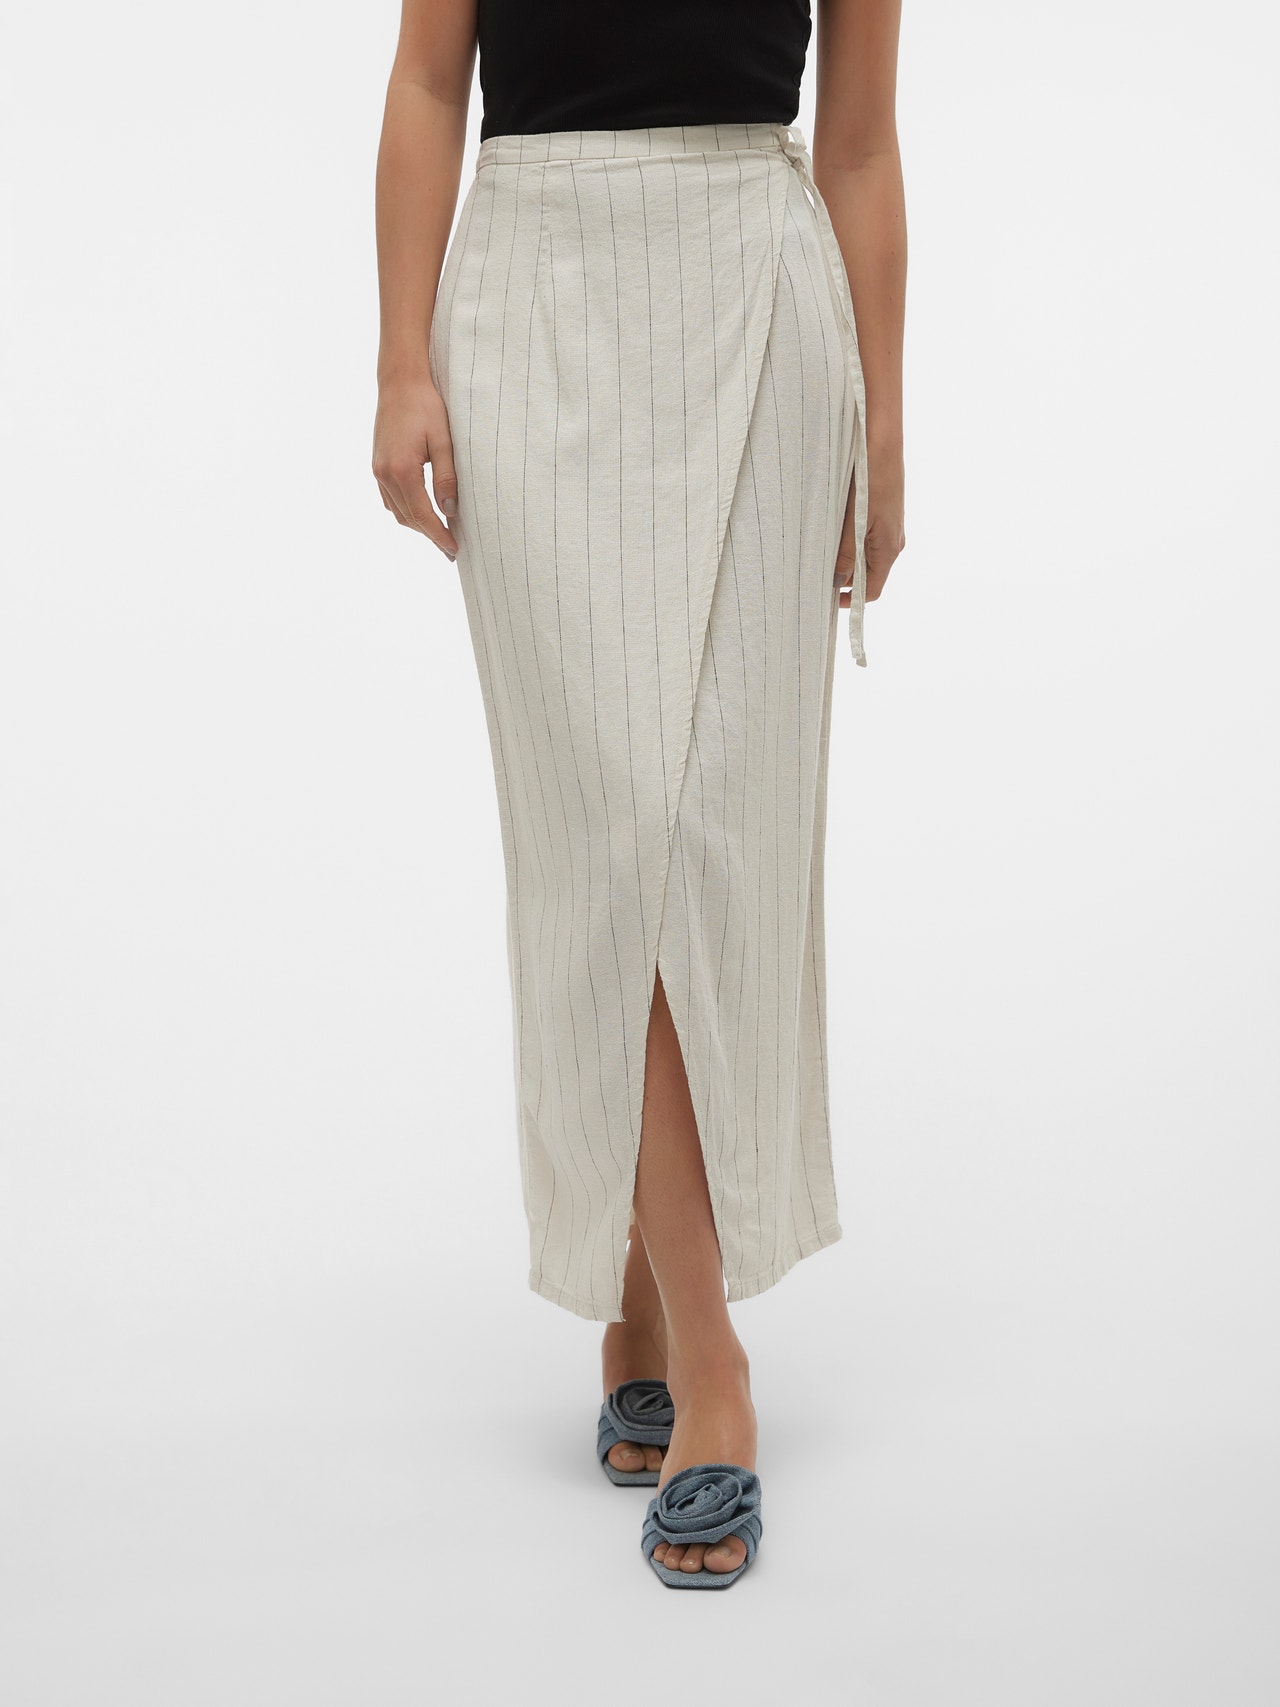 Vero Moda VMMINDY High waist Long skirt -Oatmeal - 10304662